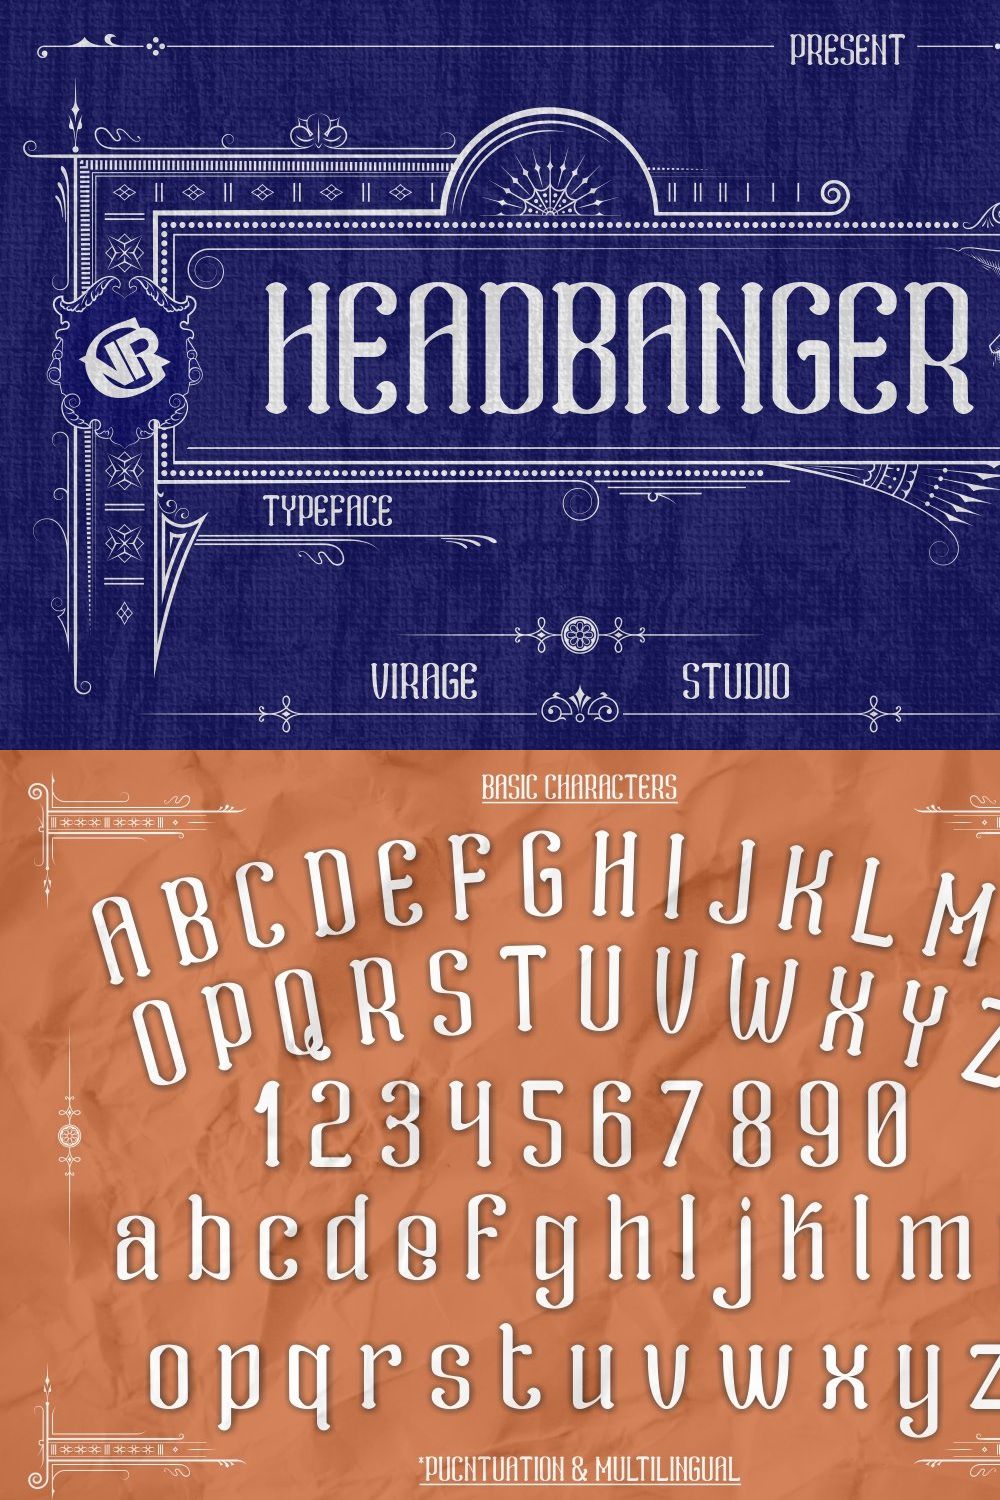 Headbanger pinterest preview image.